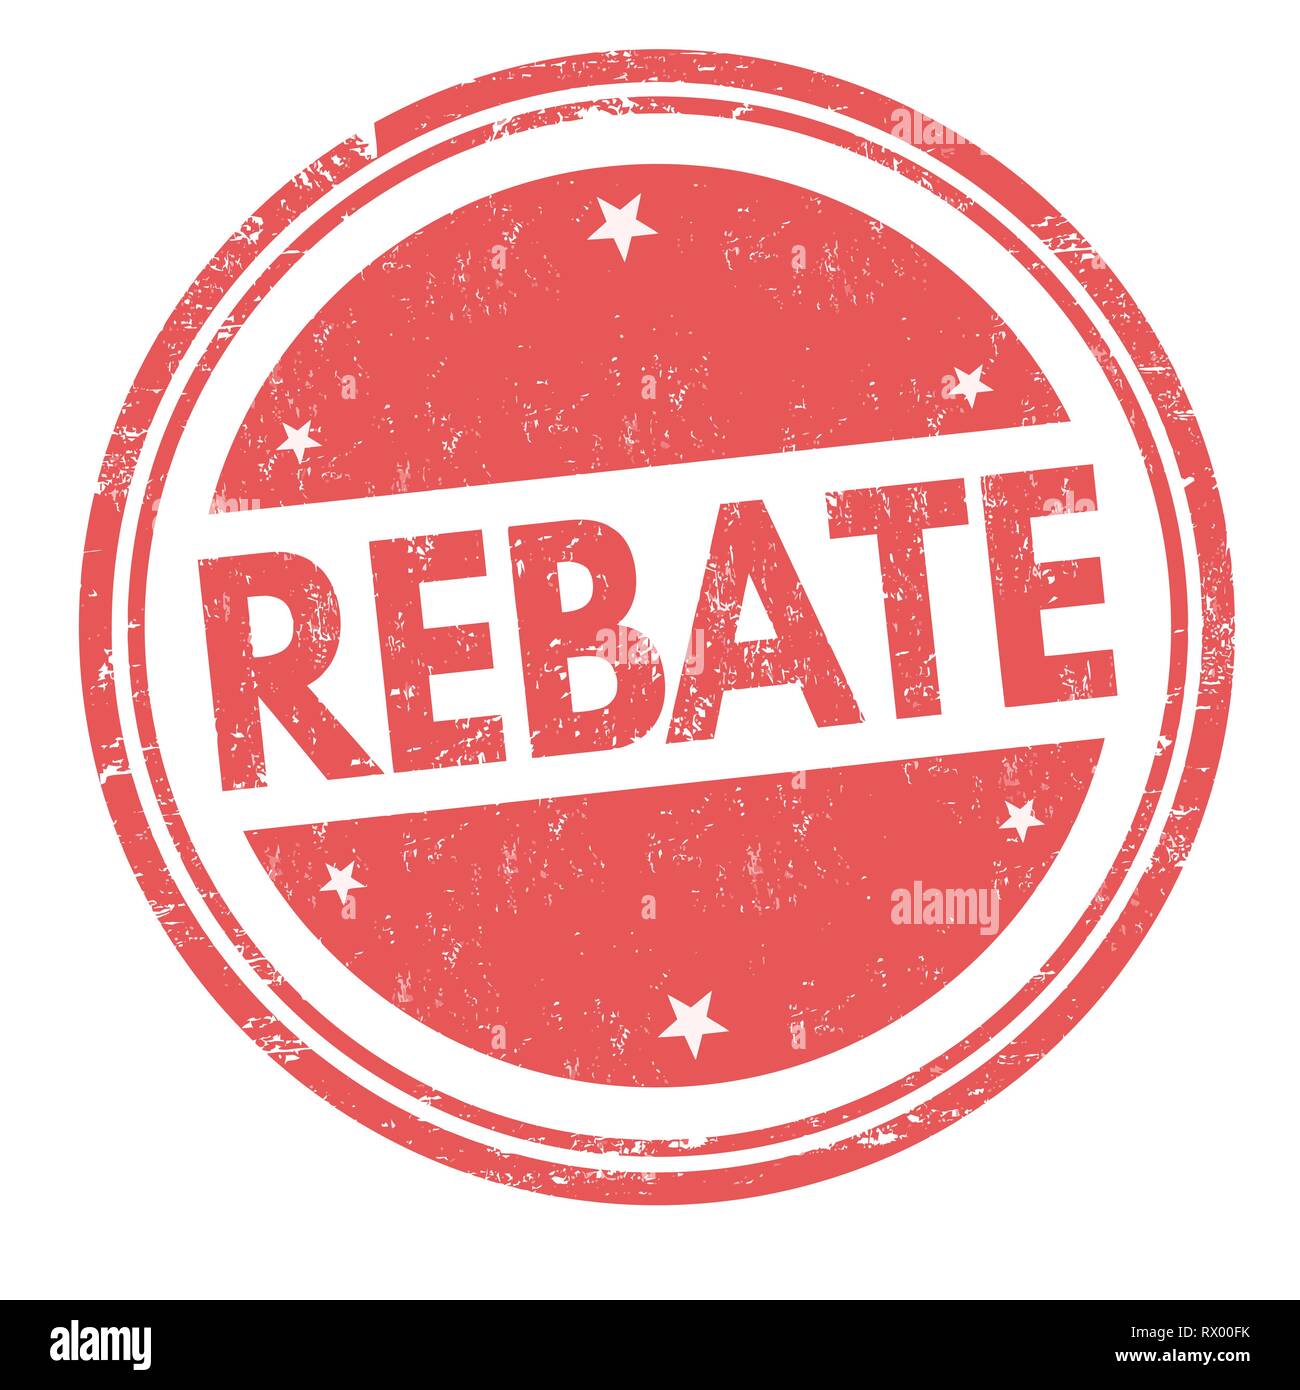 greenergic-japanese-rebates-rebatekey